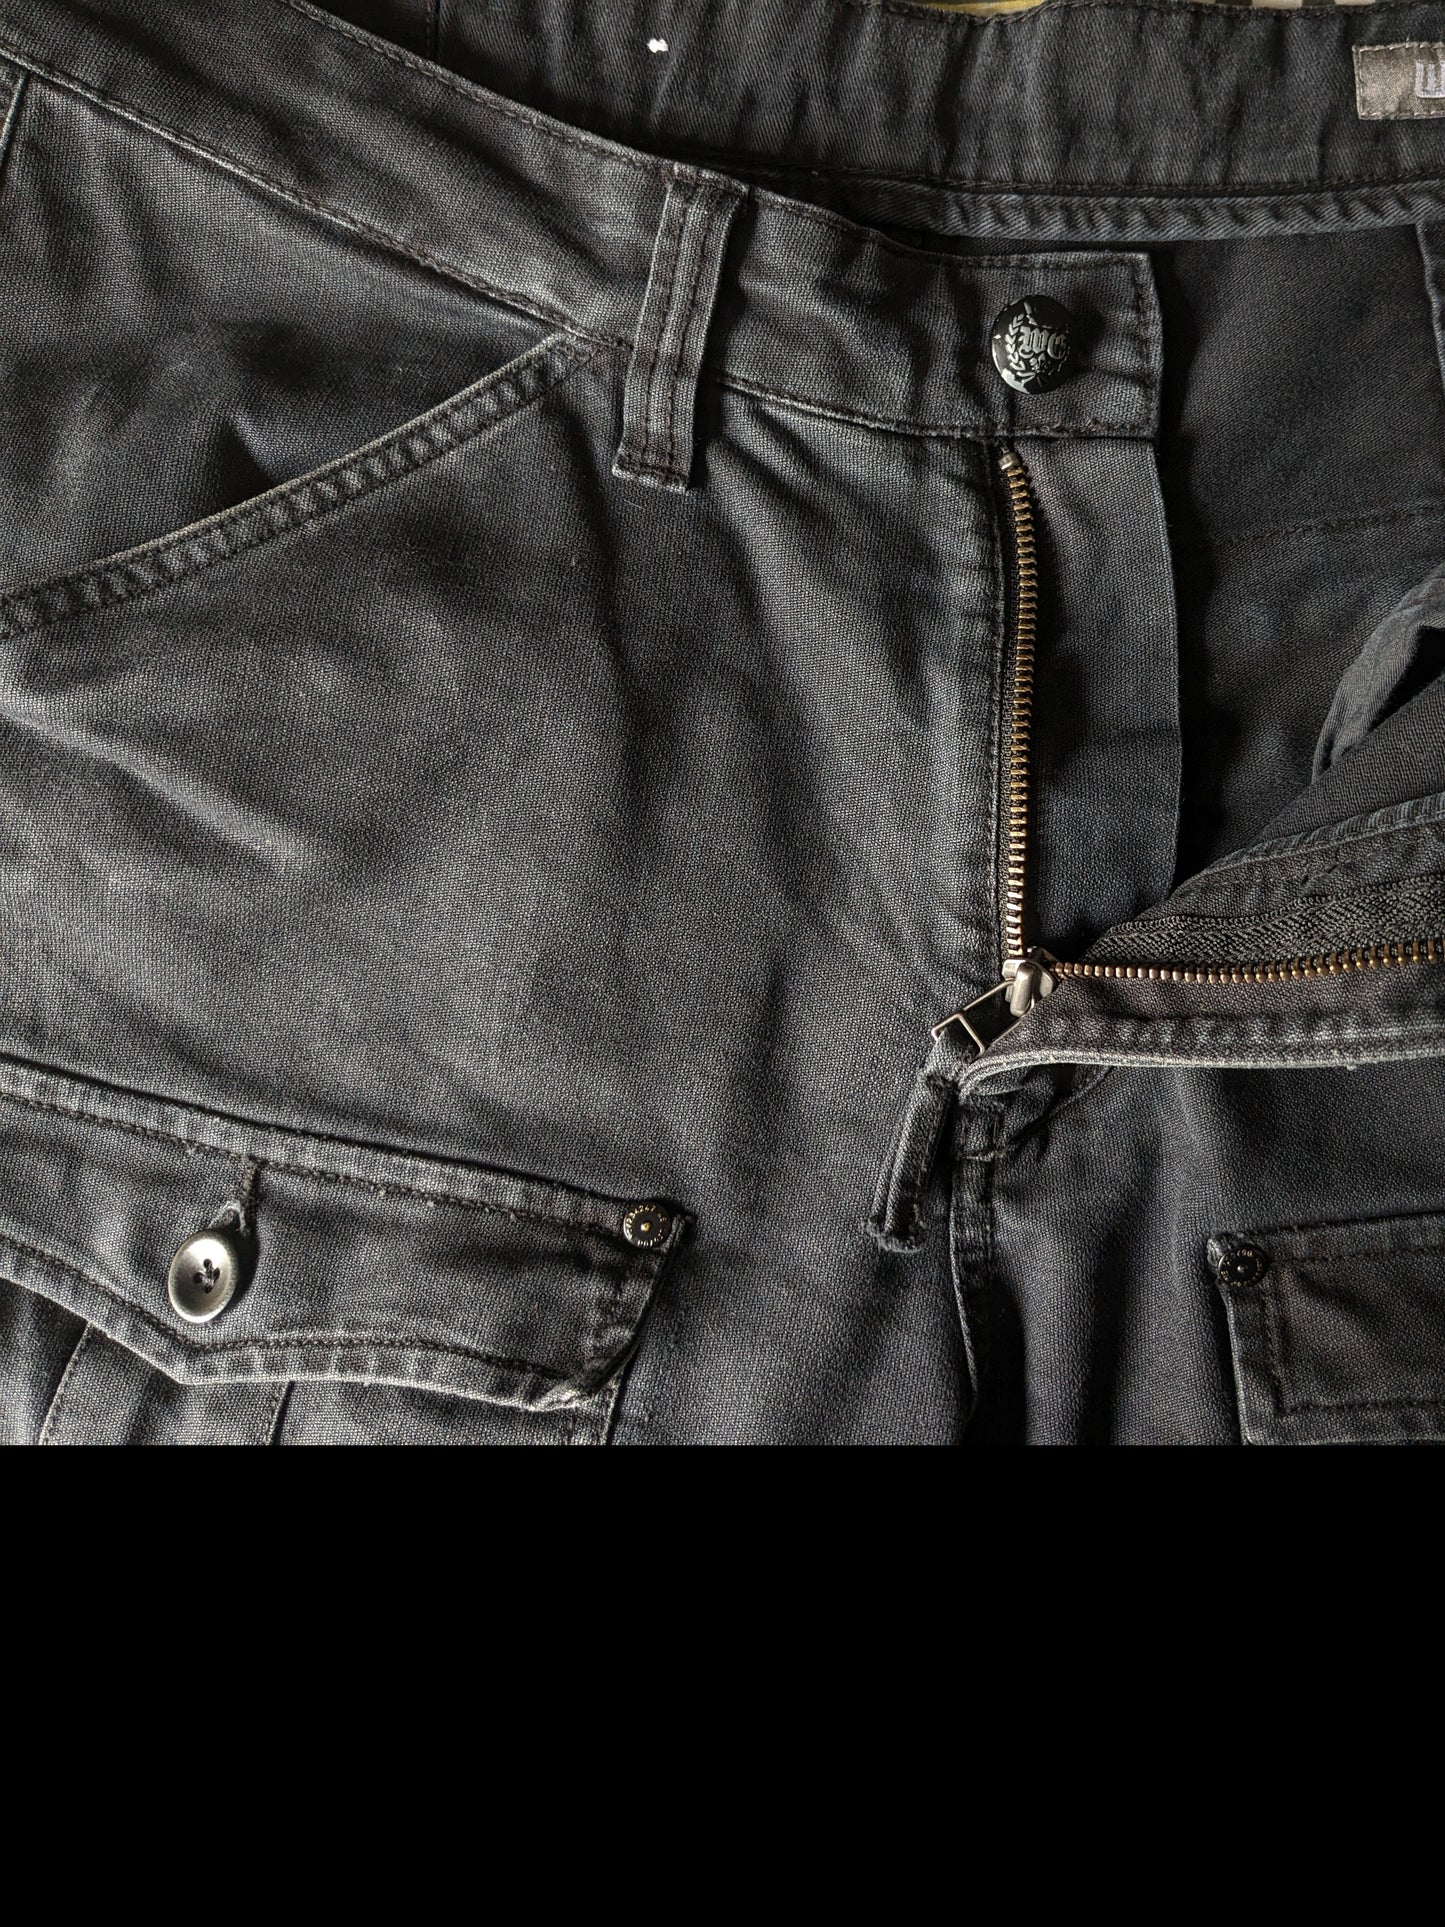 Nous façonnons des pantalons avec des sacs. Couleur noire. Taille W34 - L28.